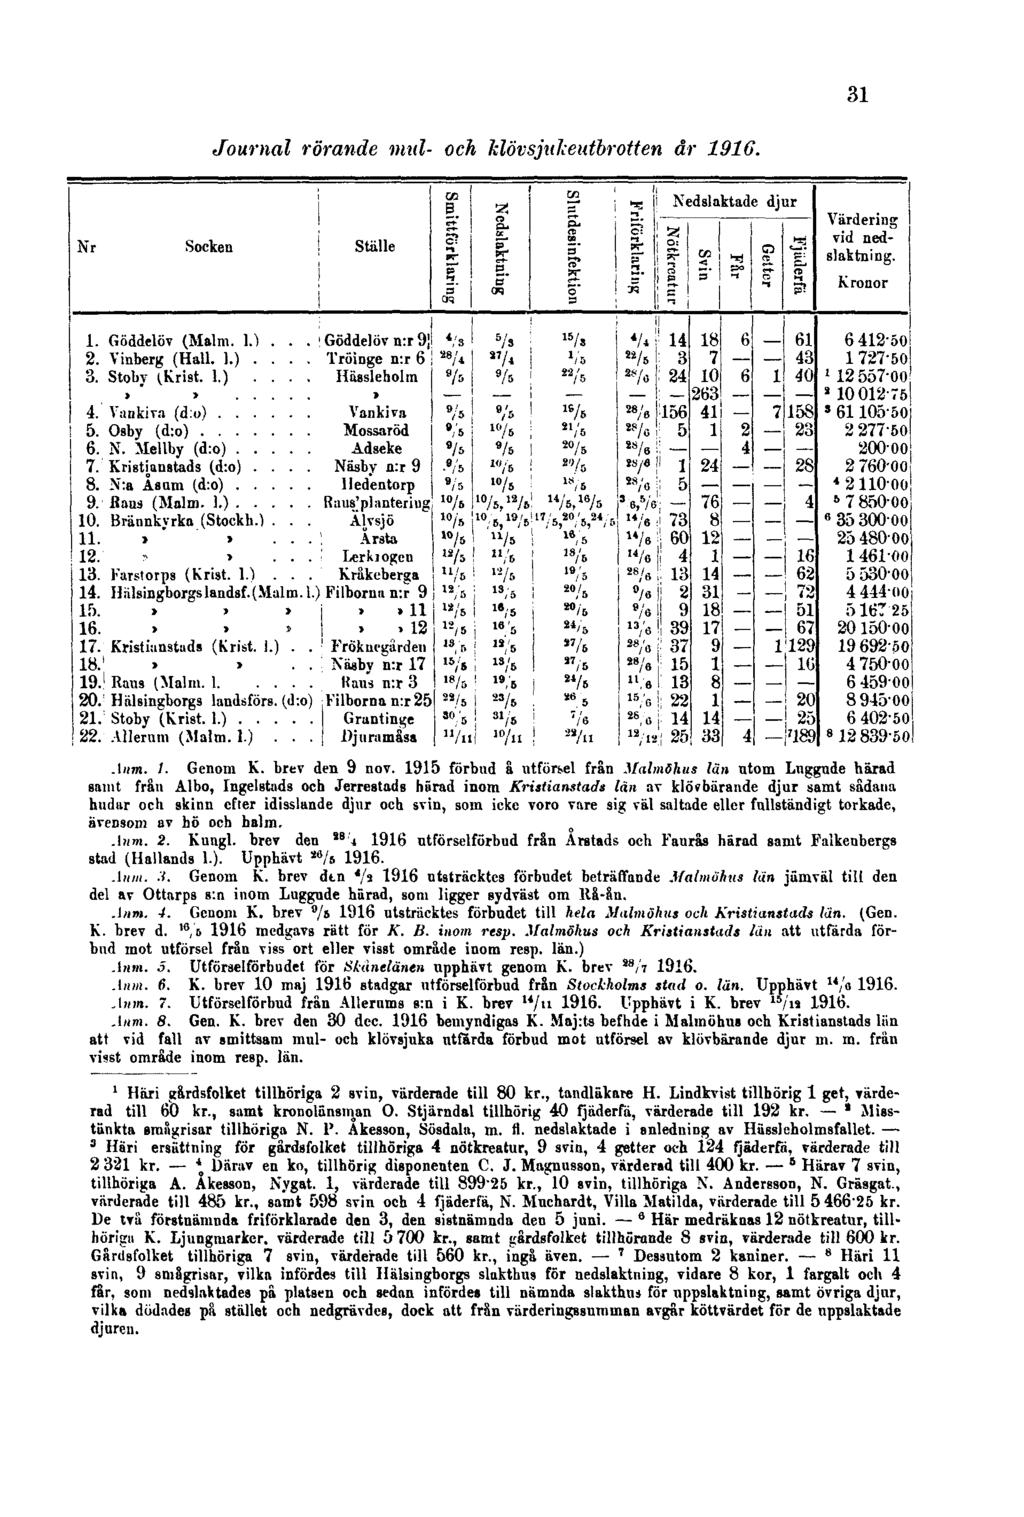 31 Journal rörande mul- och klövsjukeutbrotten år 1916. Anm. 1. Genom K. brev den 9 nov.